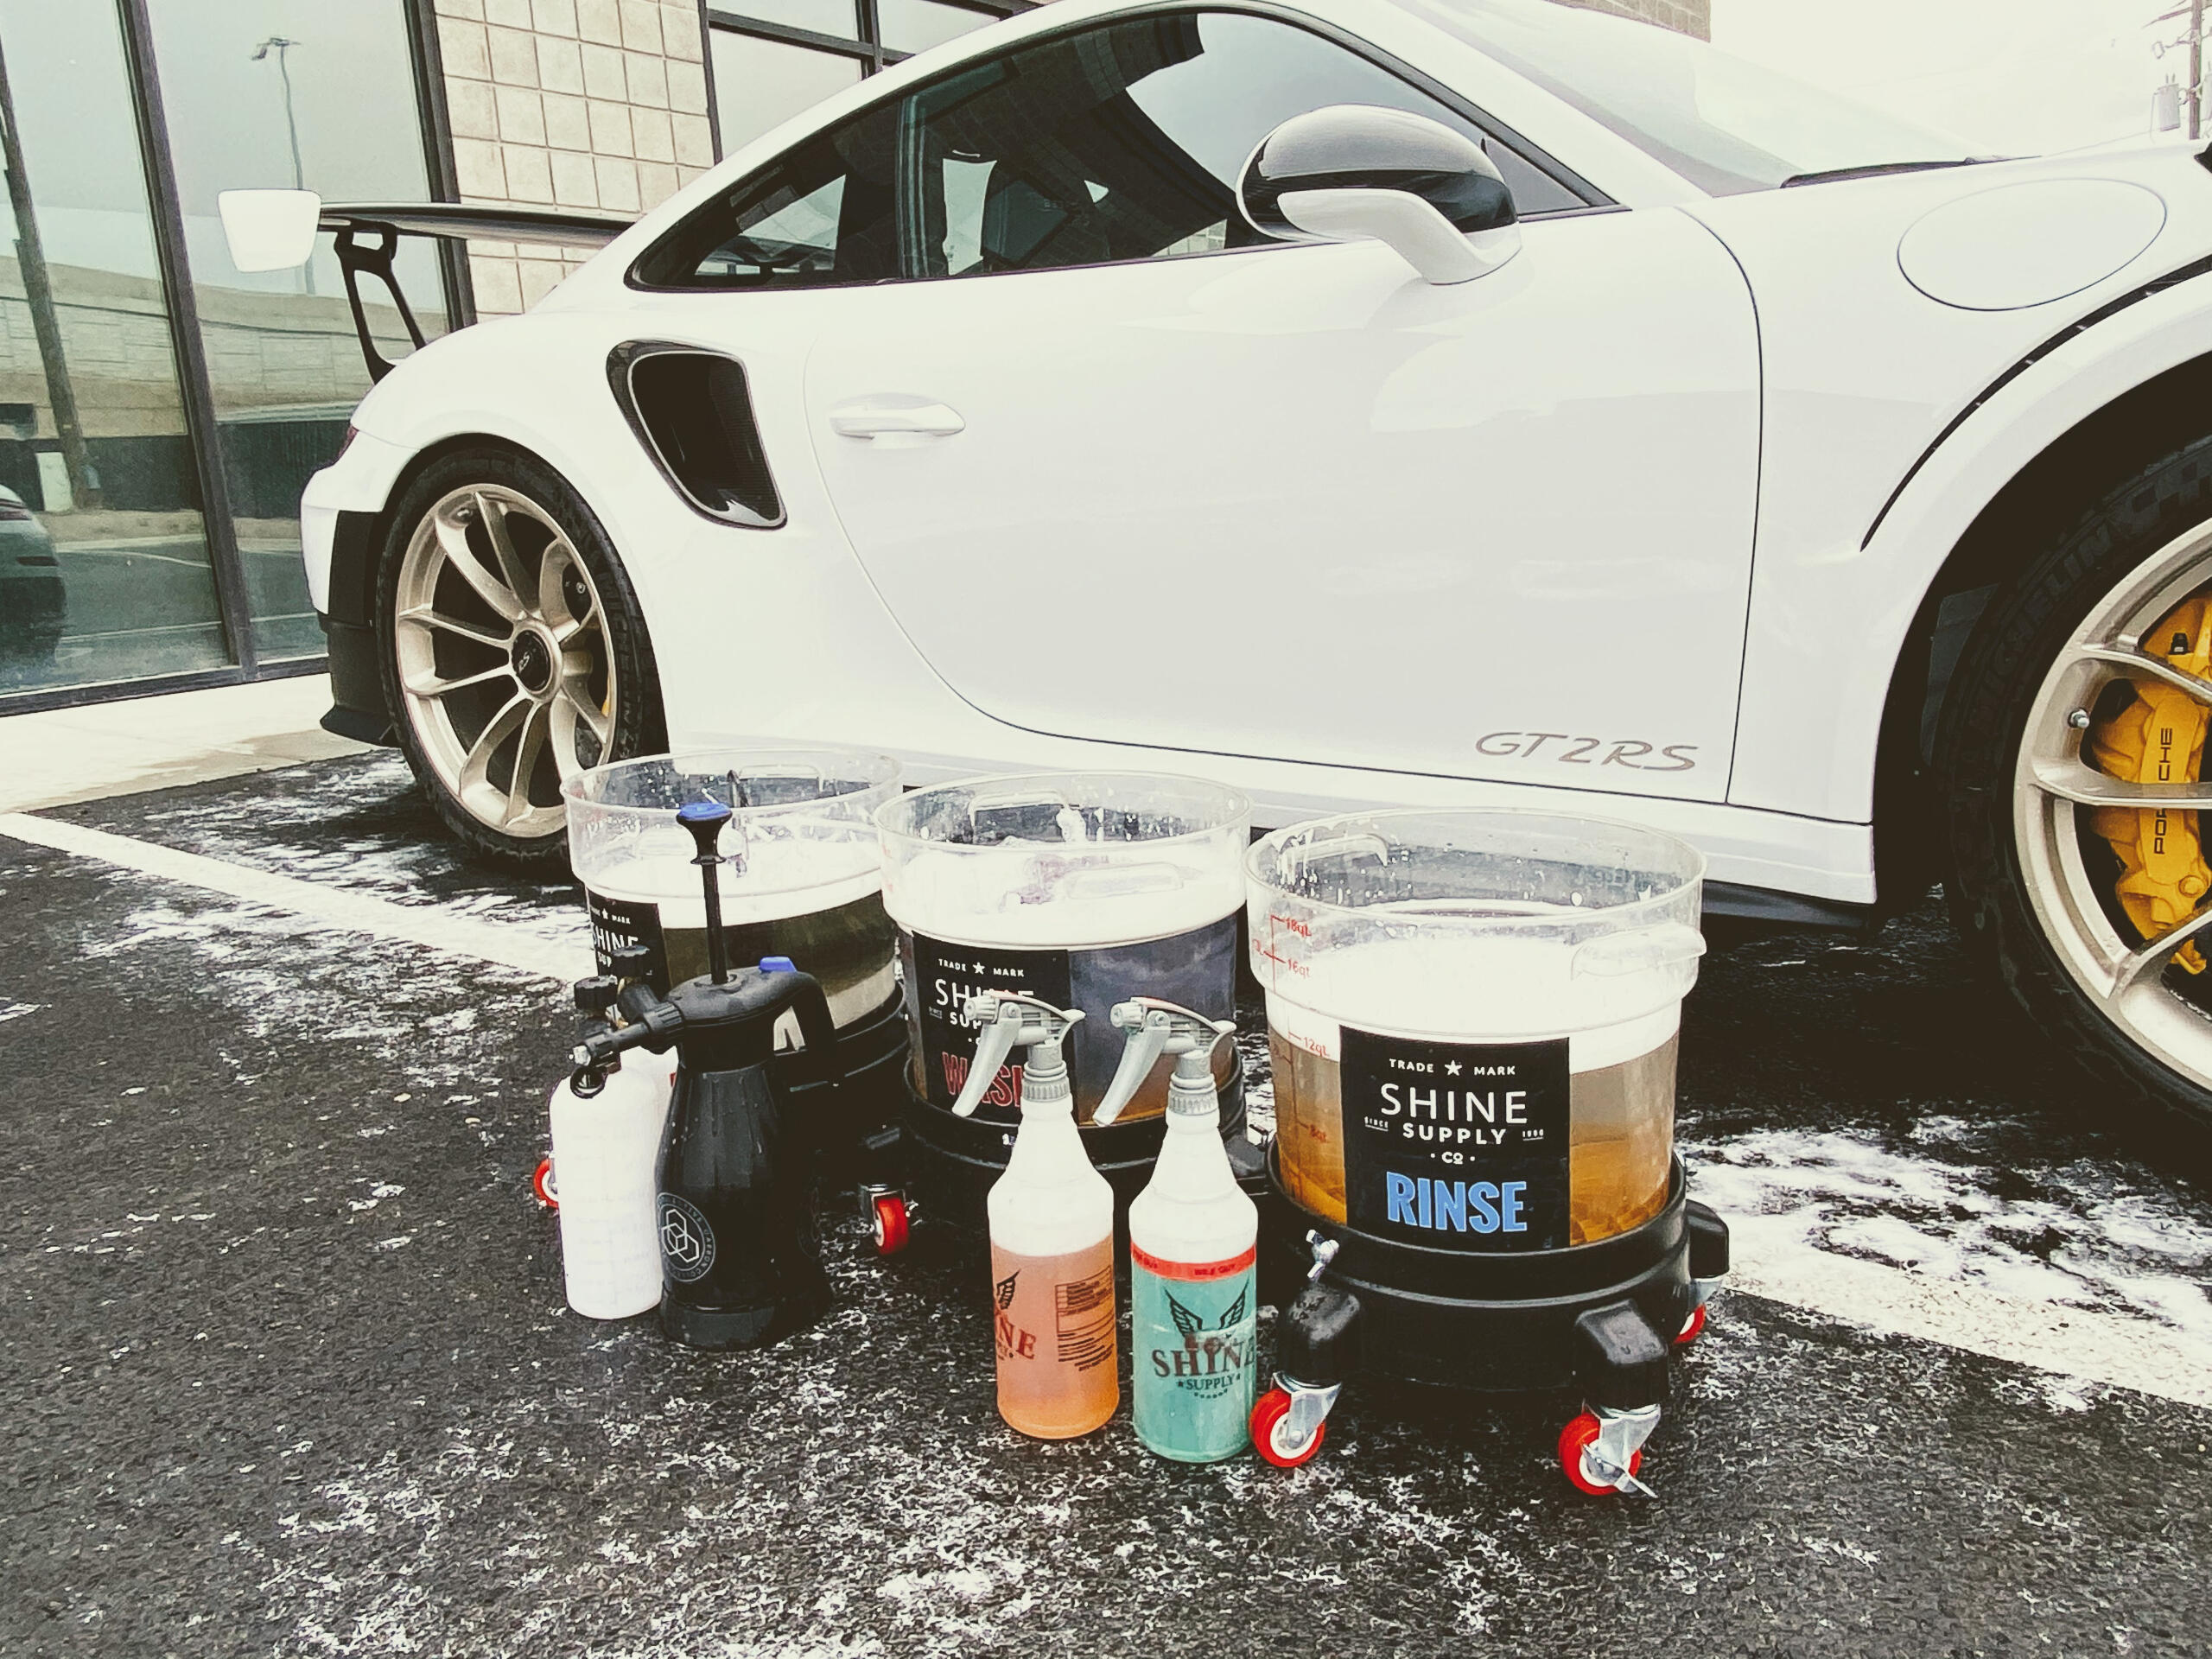 Porsche 911 GT2RS